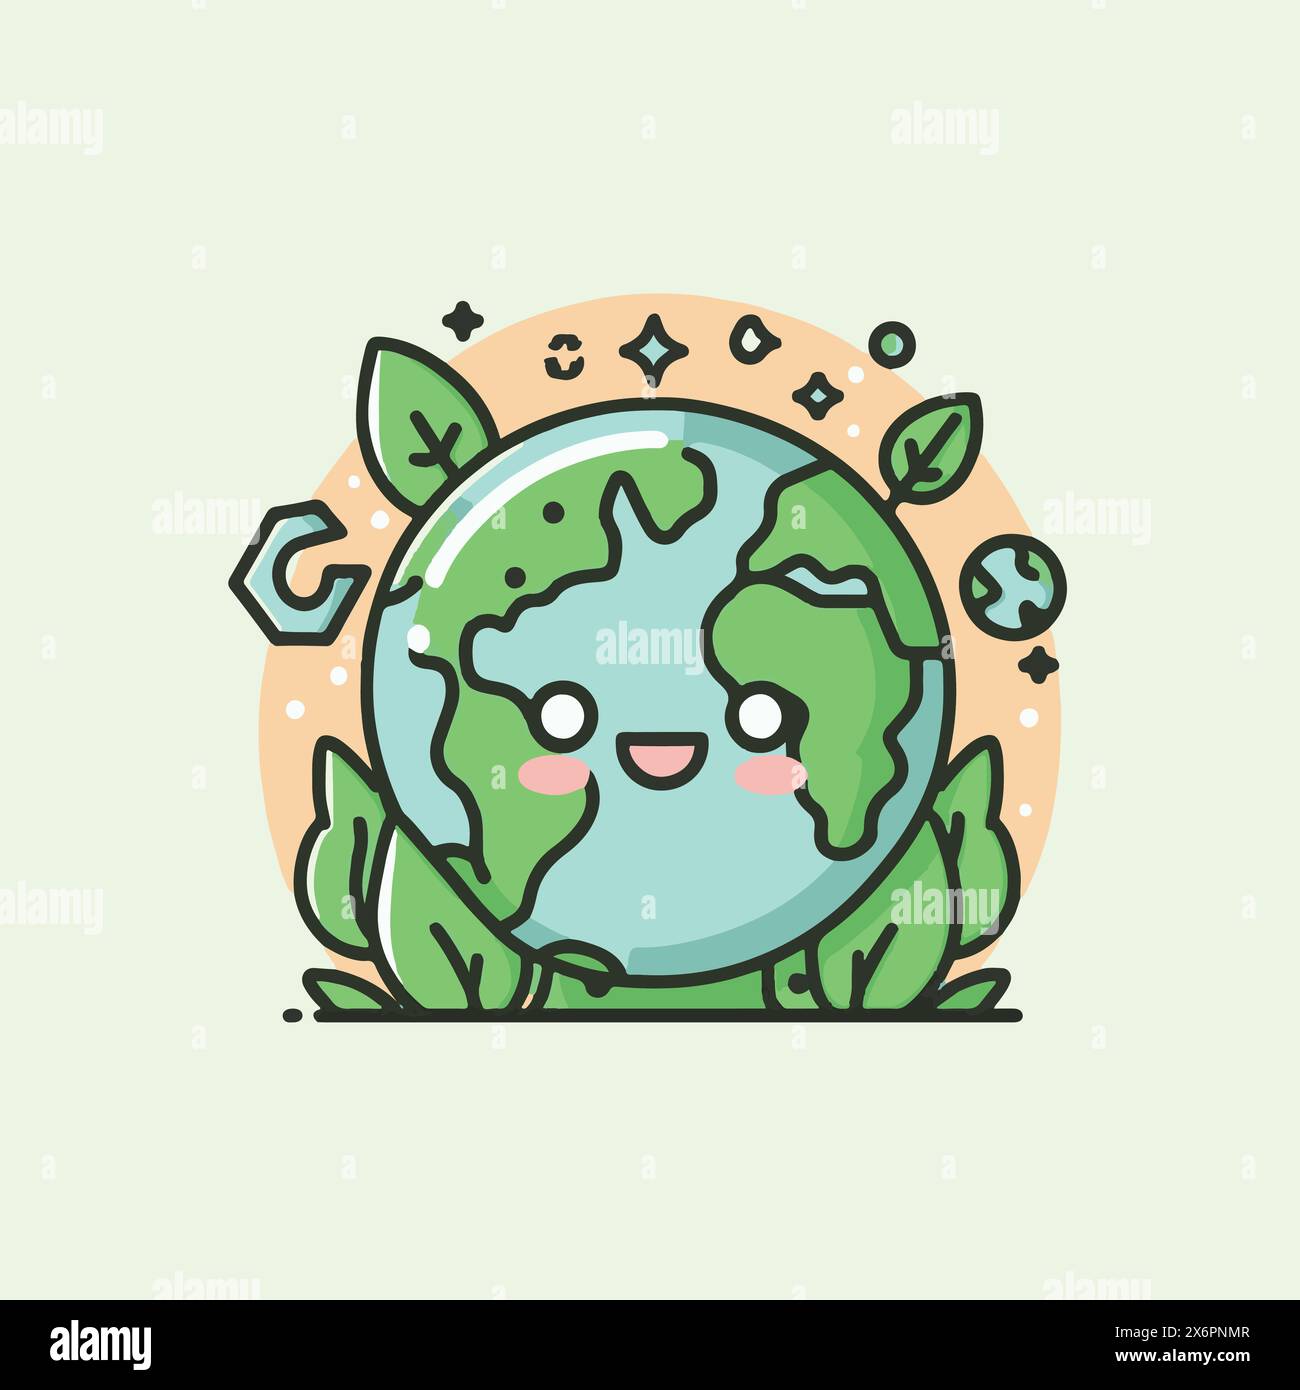 Playful Educational Earth and Environment Cartoon Vectors: Design divertenti e informativi per l'apprendimento coinvolgente Illustrazione Vettoriale